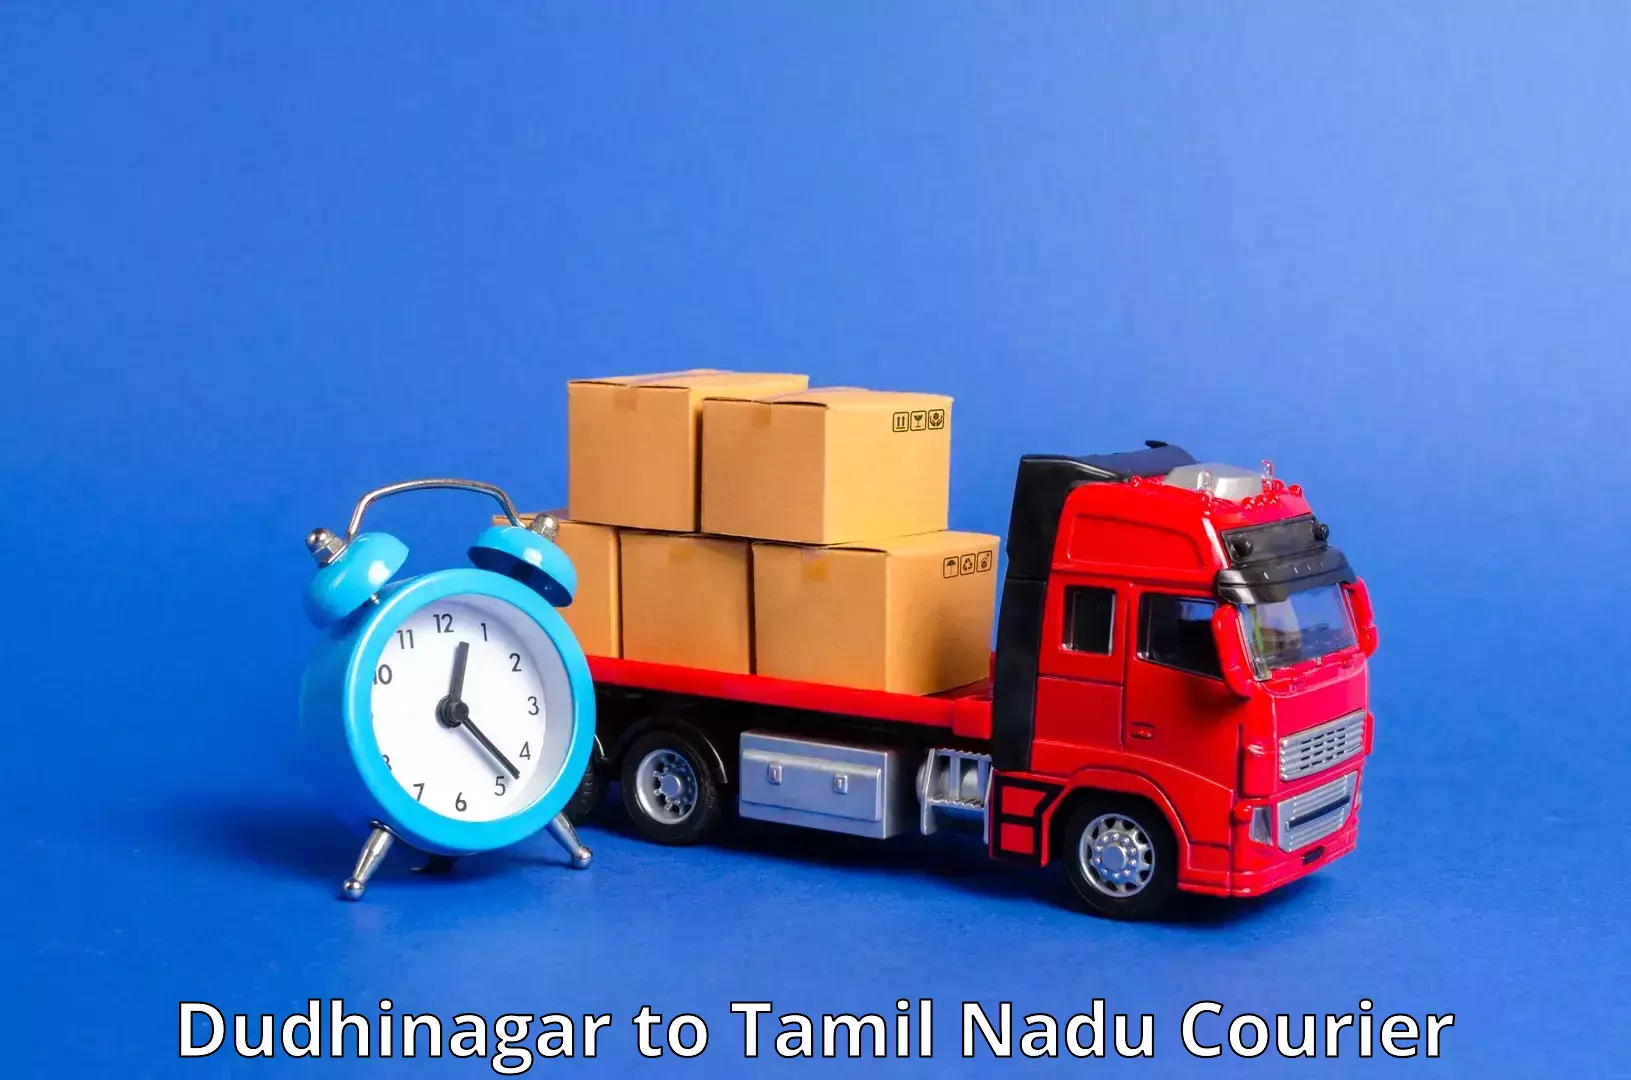 24/7 courier service Dudhinagar to Manapparai